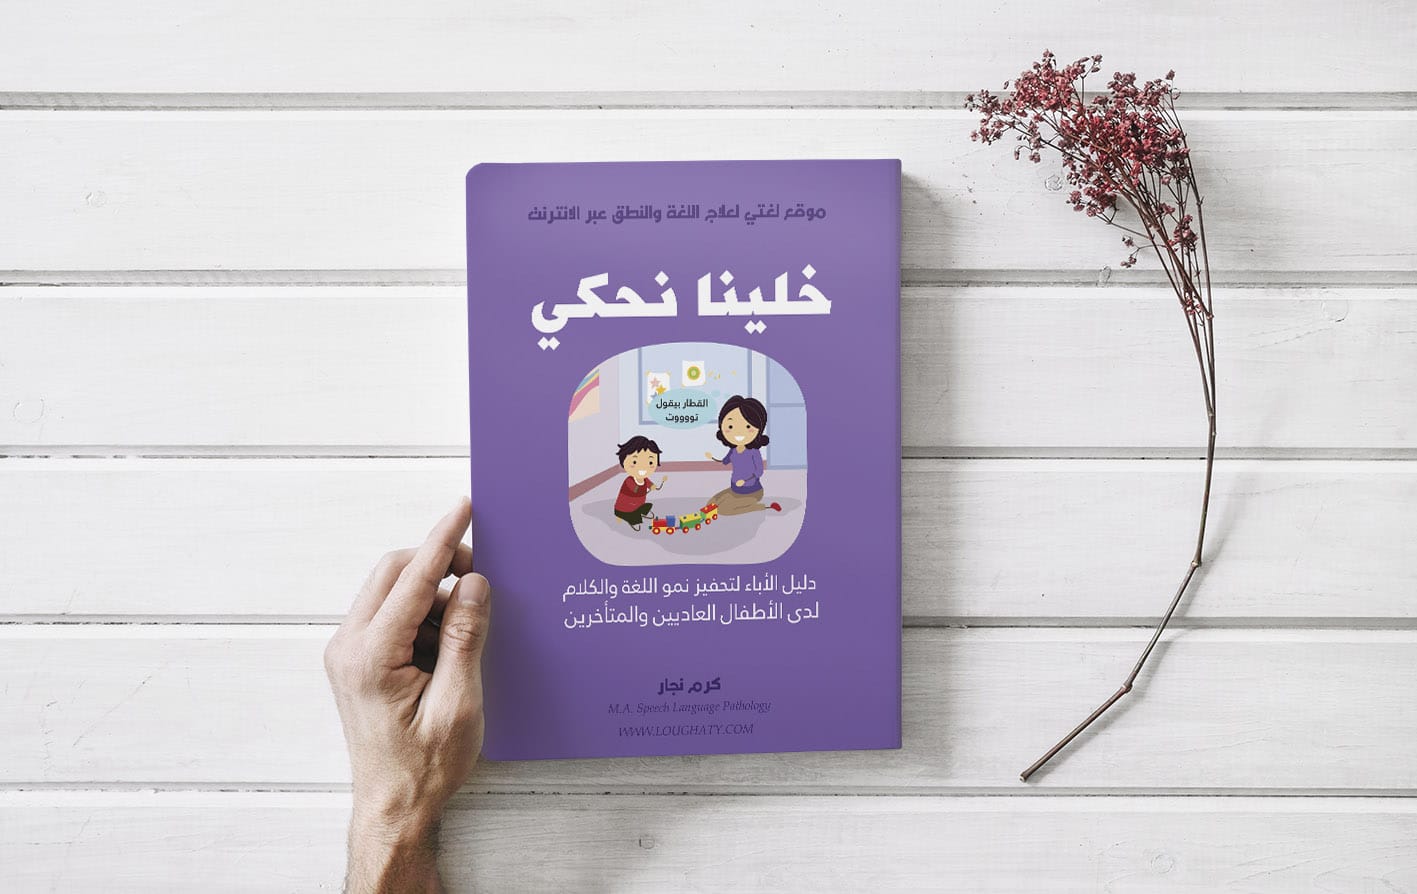 كتاب “خلينا نحكي” دليل الآباء في تنمية المهارات اللغوية للطفل